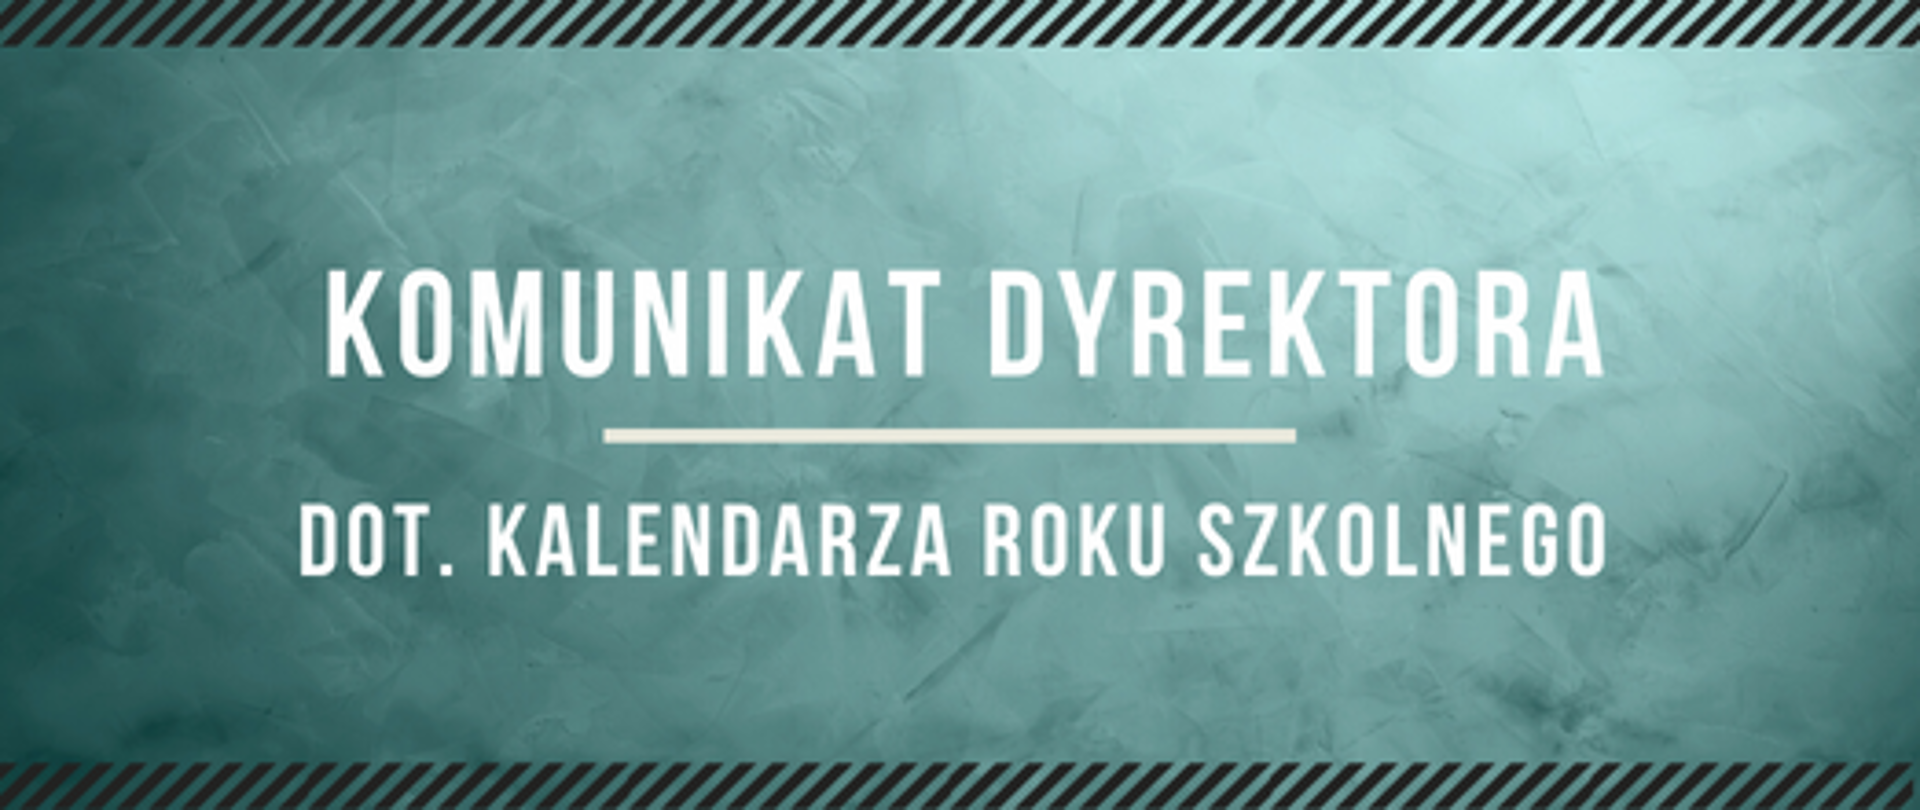 na turkusowym tle został umieszczony napis: "komunikat dyrektora szkoły dot kalendarza szkolnego"